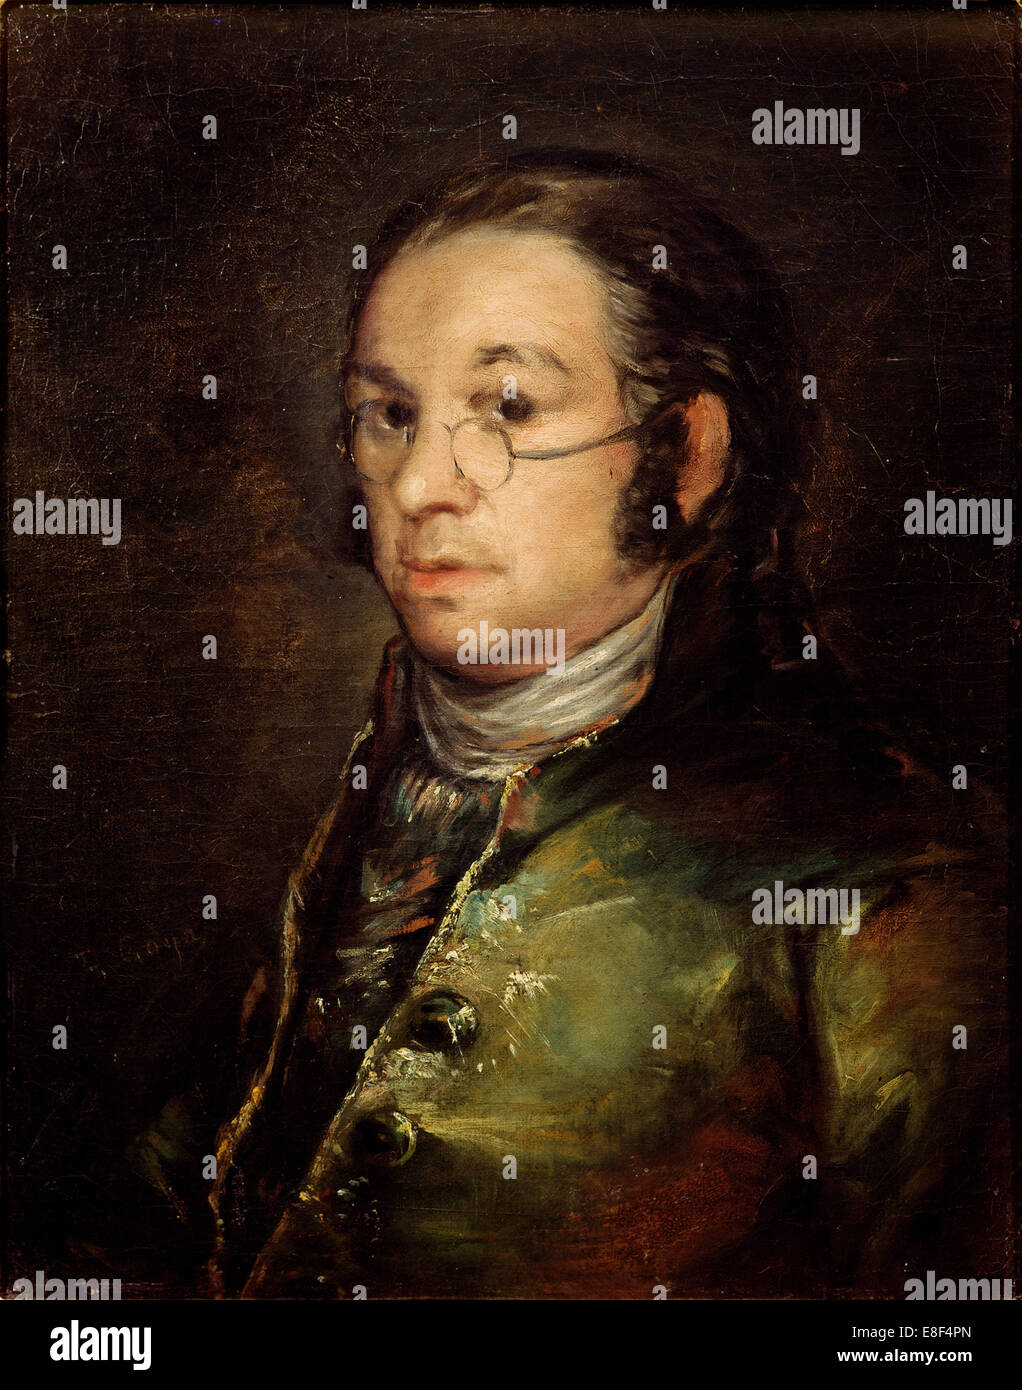 Autoportrait avec lunettes. Artiste : Goya, Francisco de (1746-1828) Banque D'Images